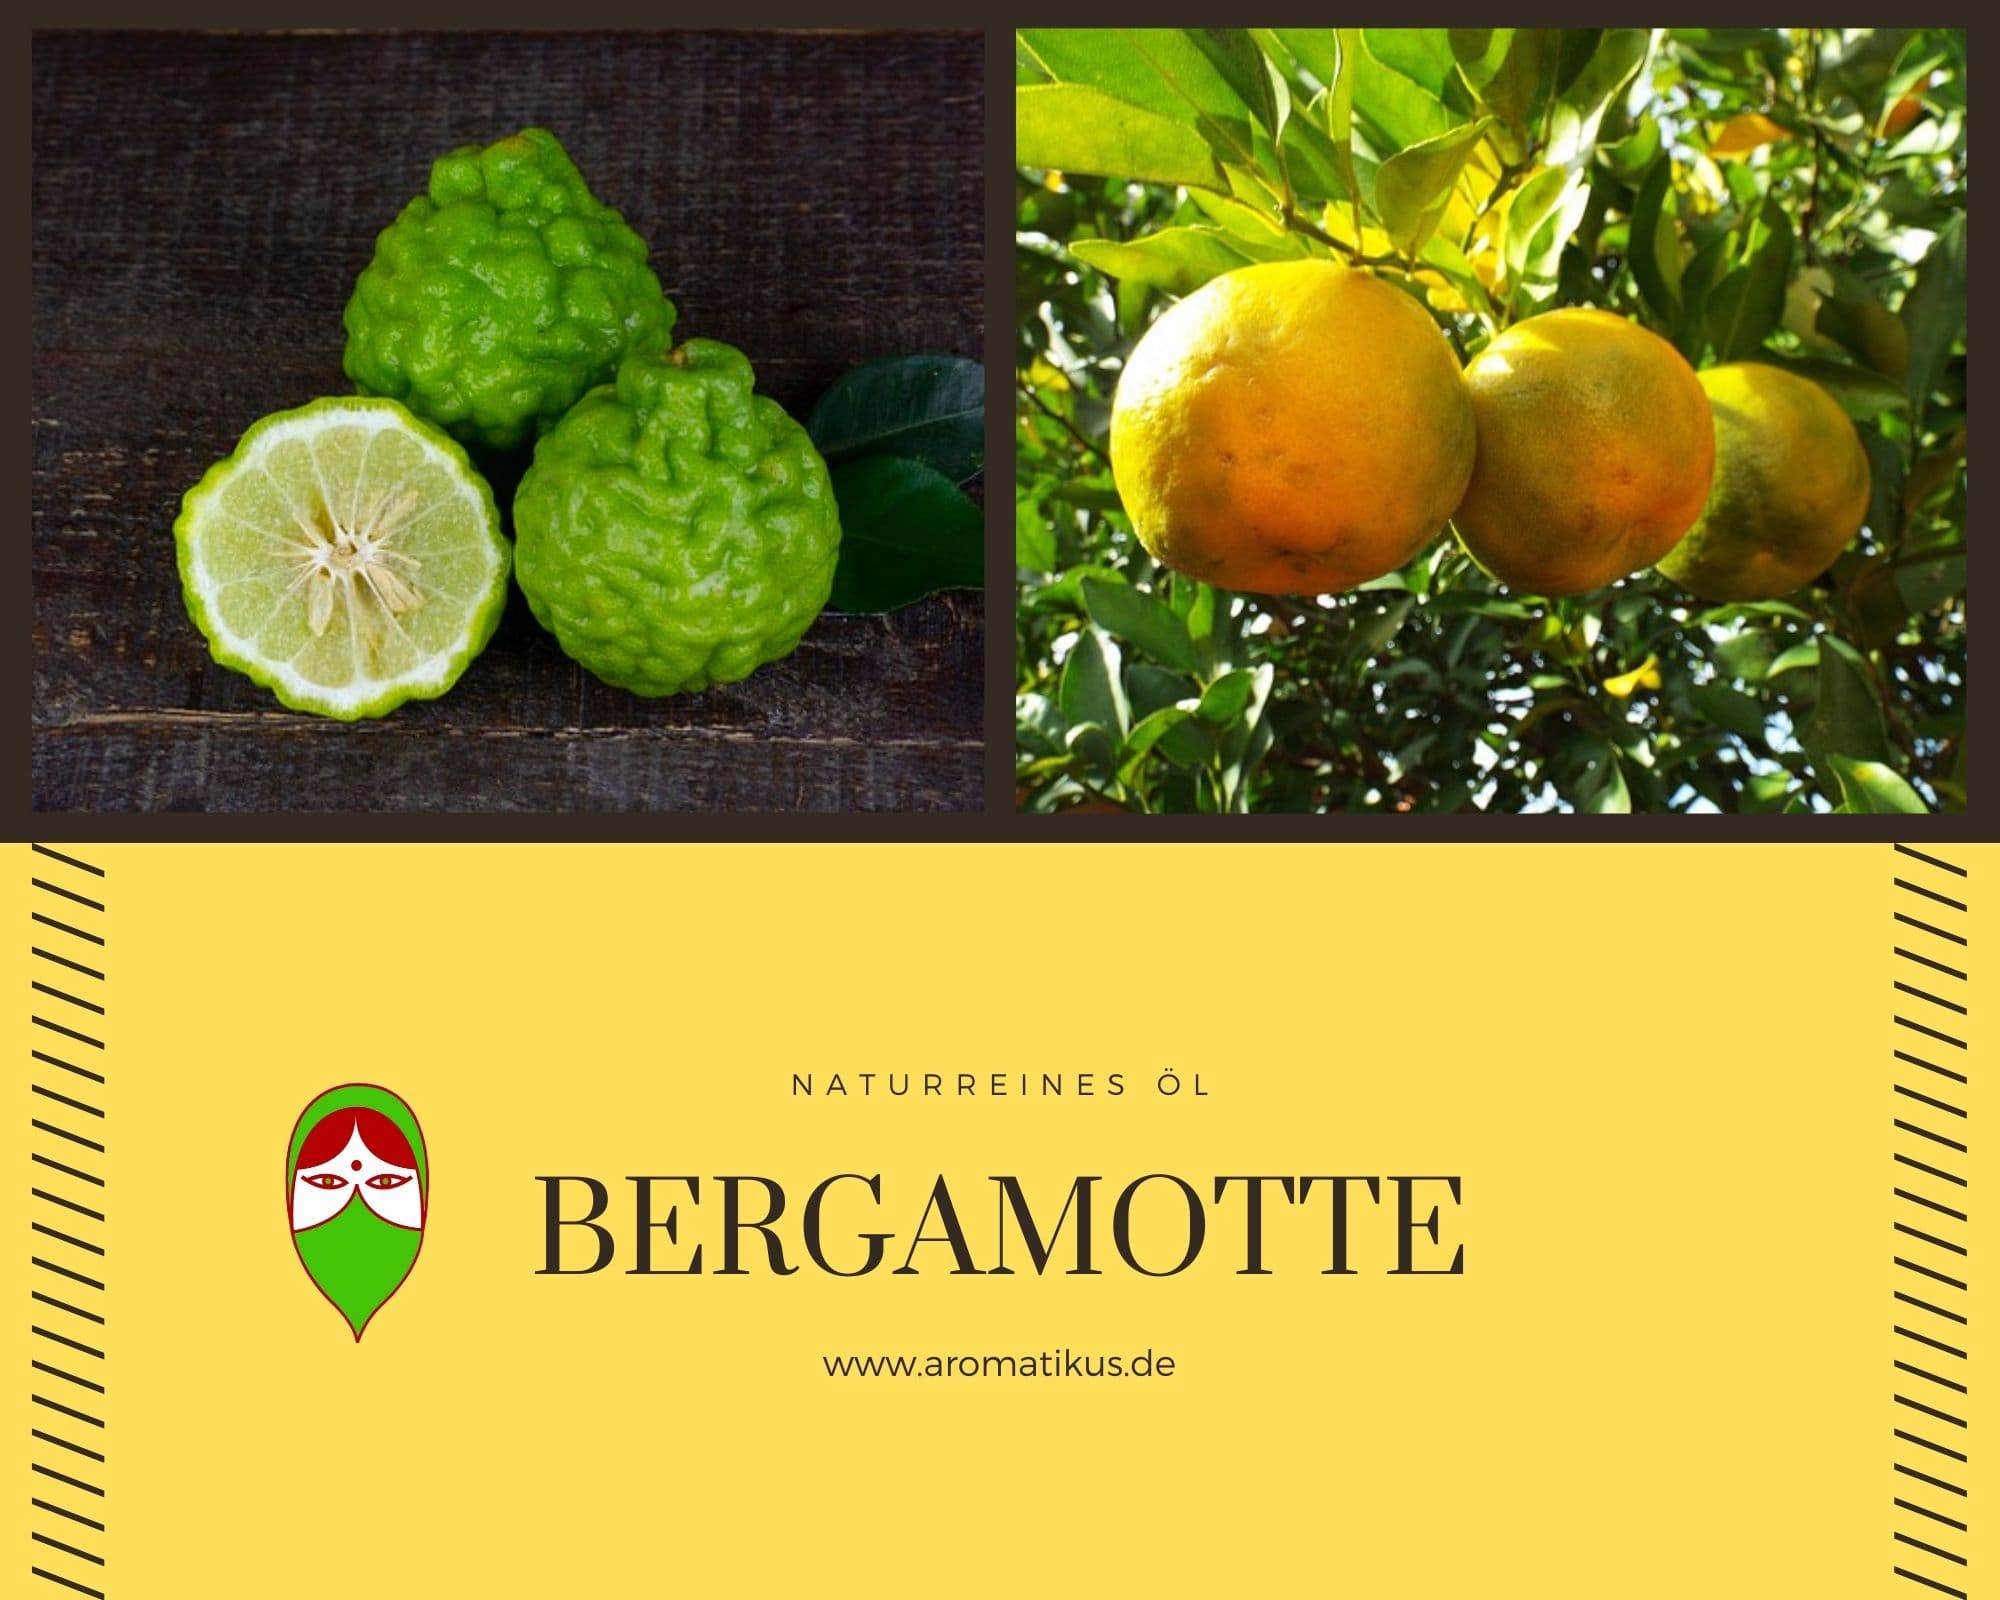 Ätherisches Duftöl Bergamotte als naturreines Öl von Aromatikus